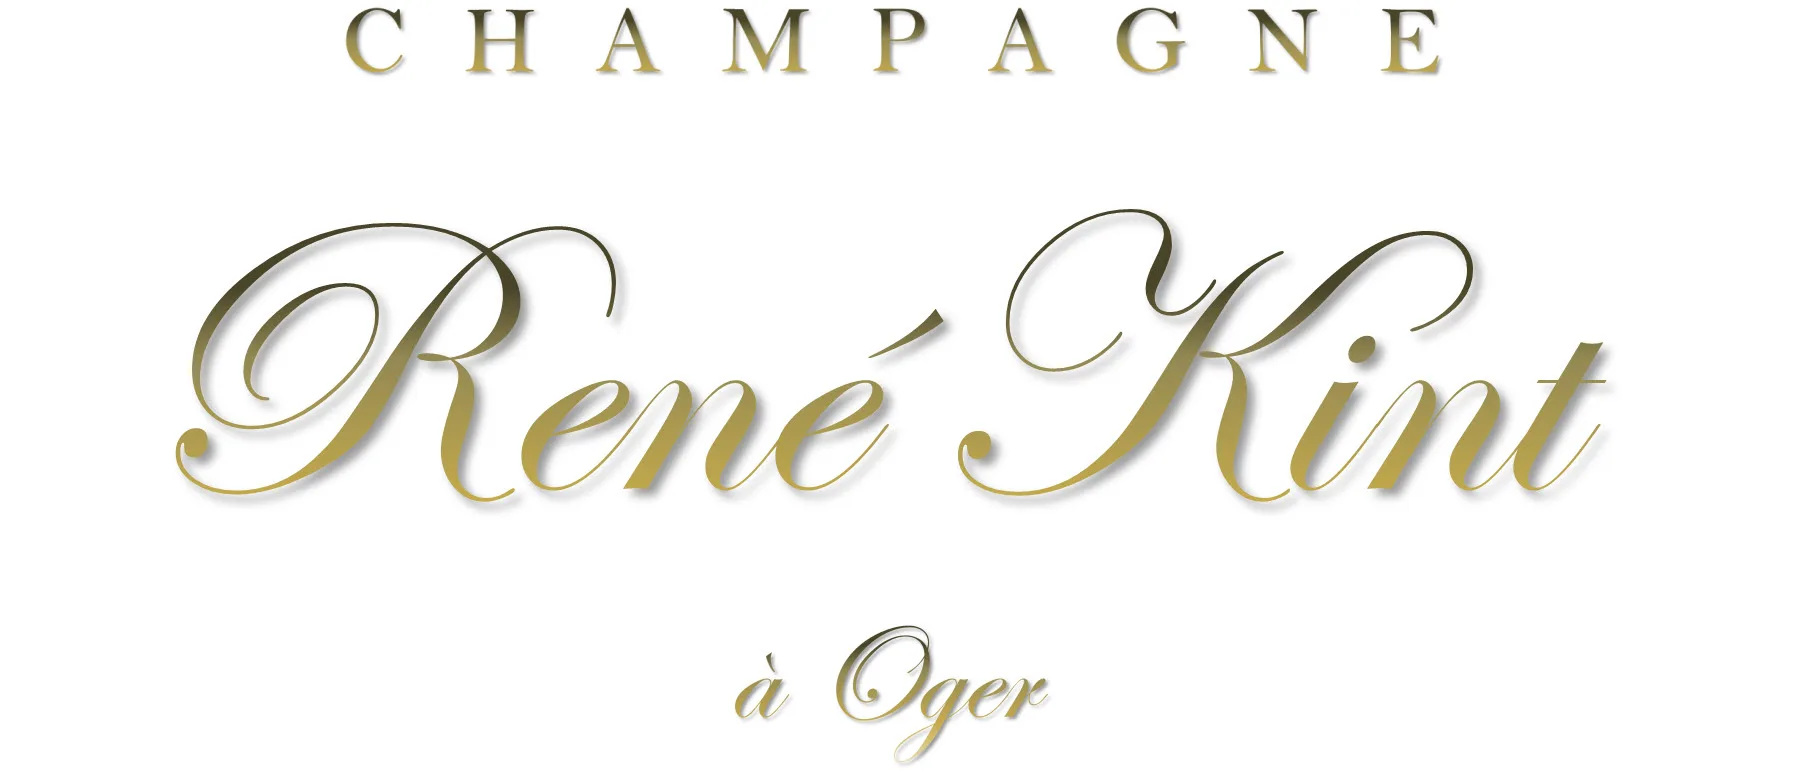 Champagne René Kint